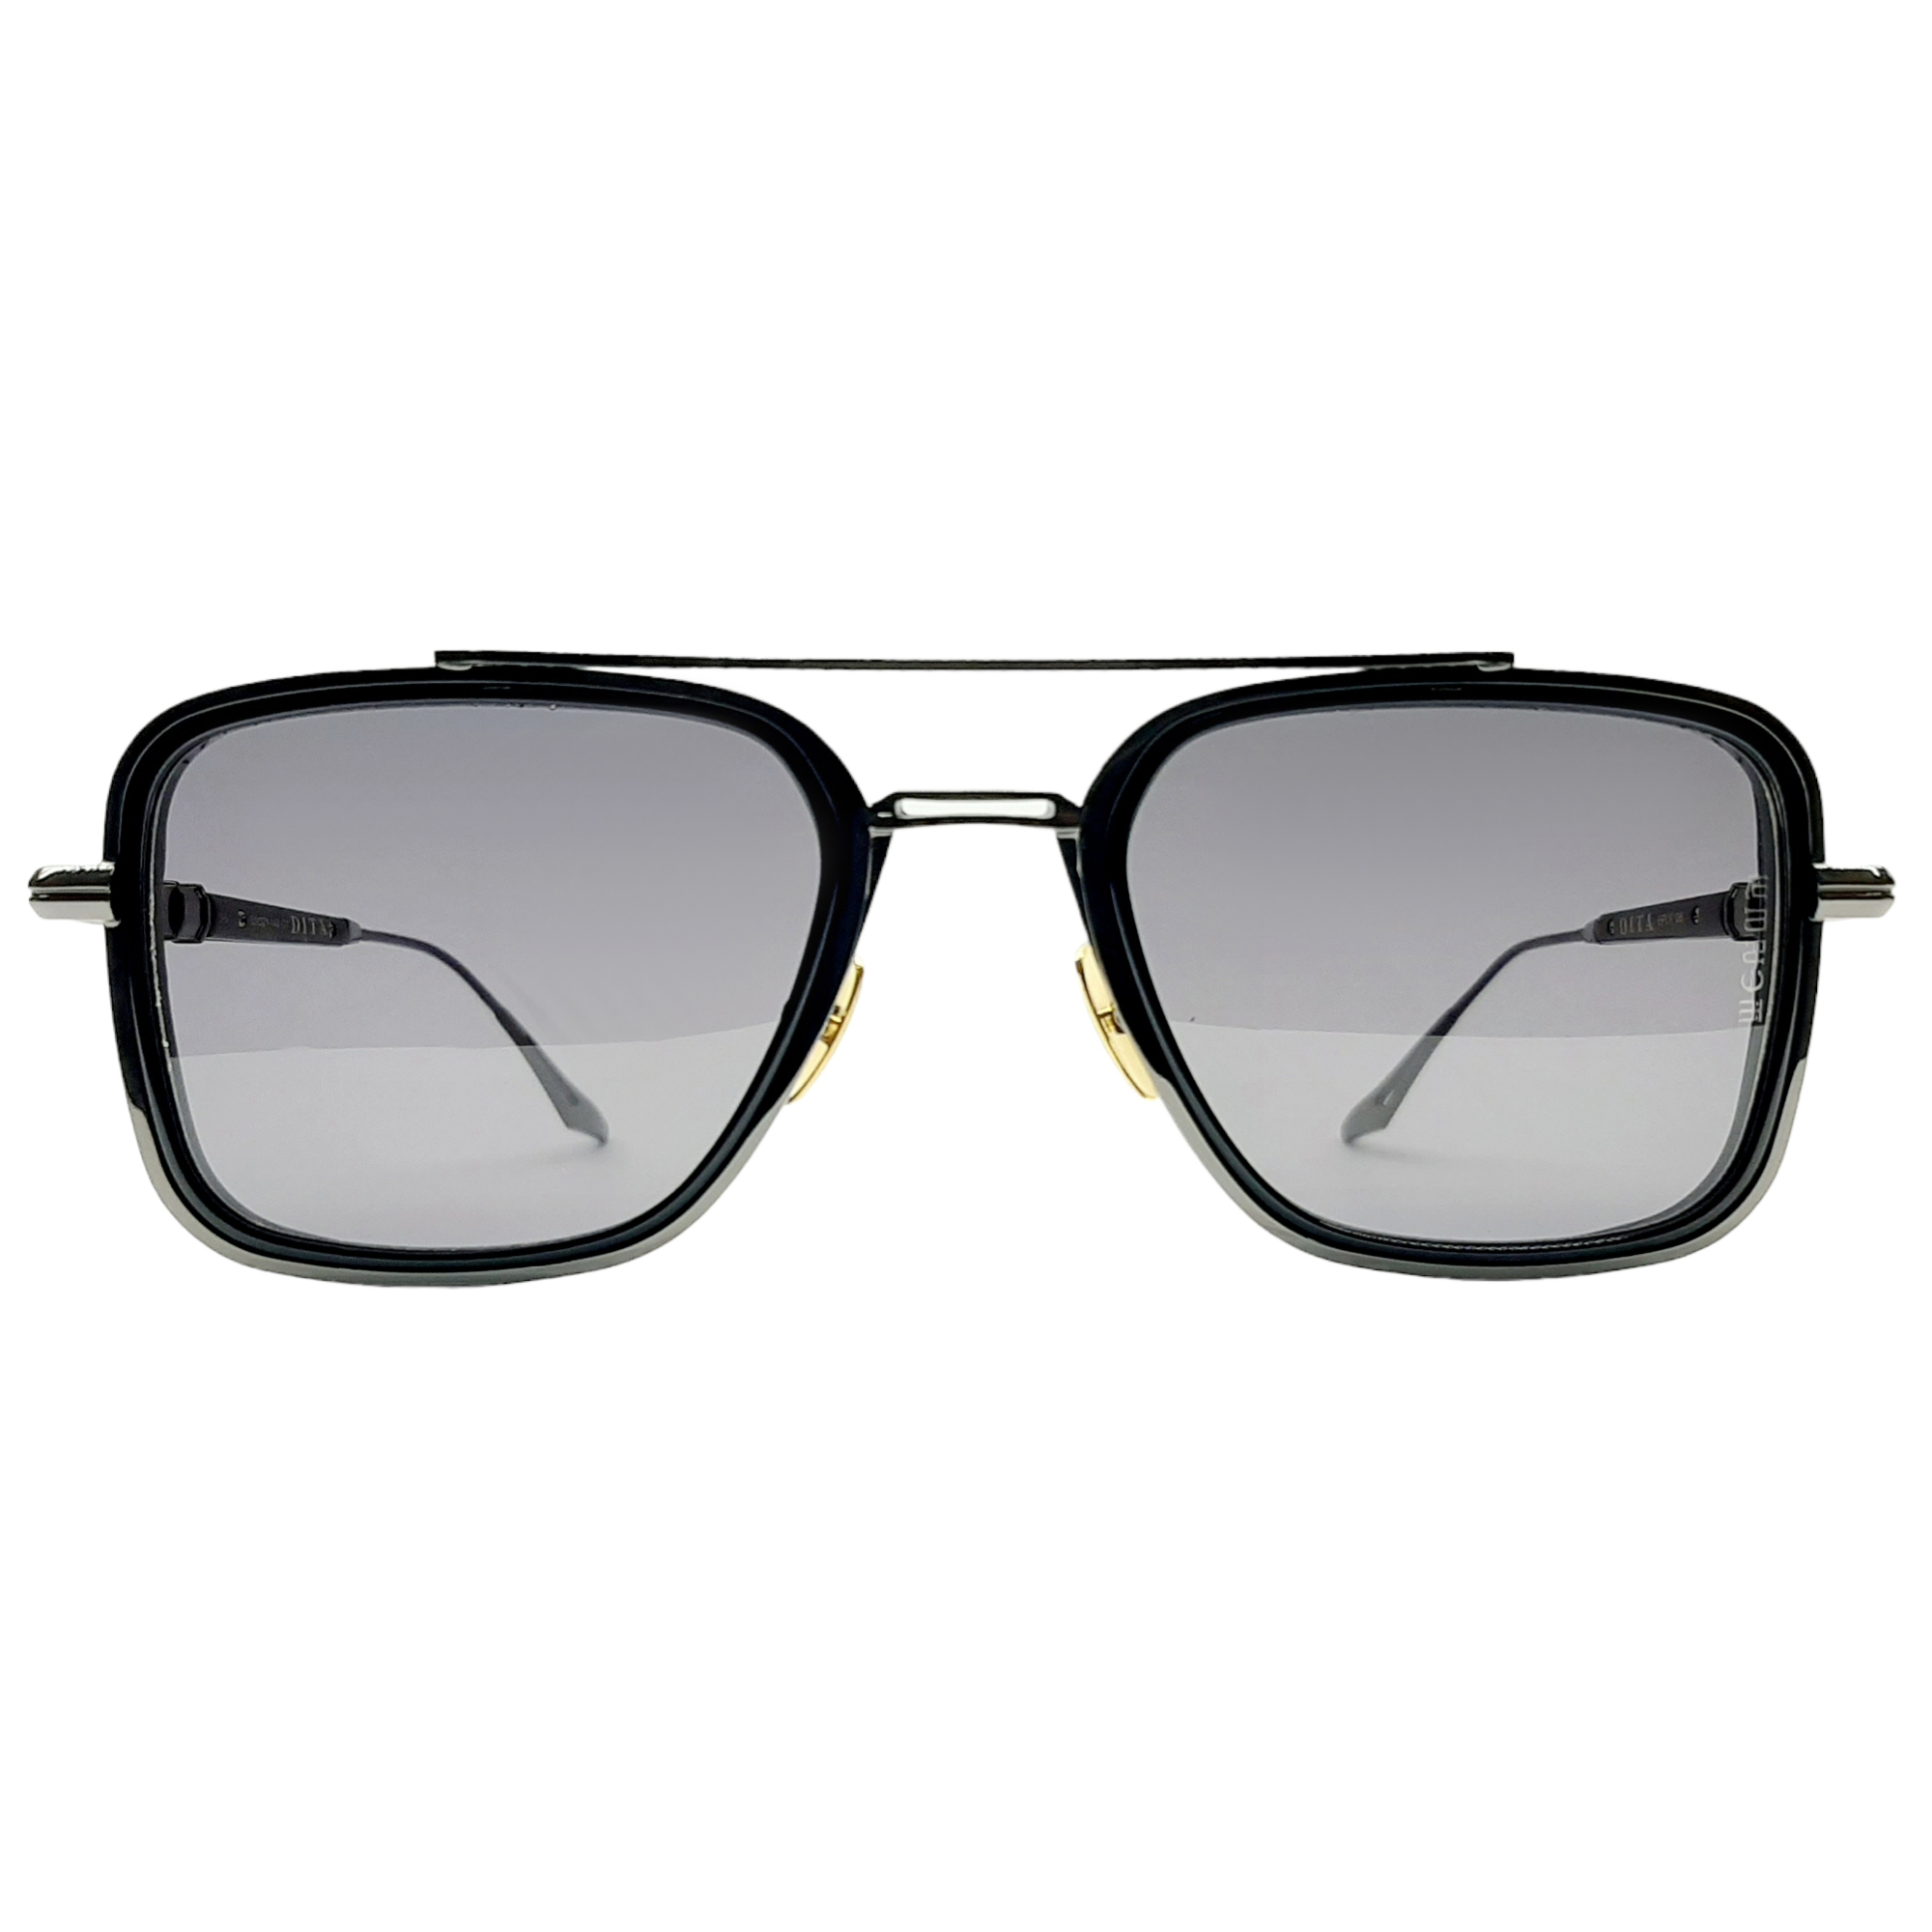 عینک آفتابی دیتا مدل EPLX08c1-black